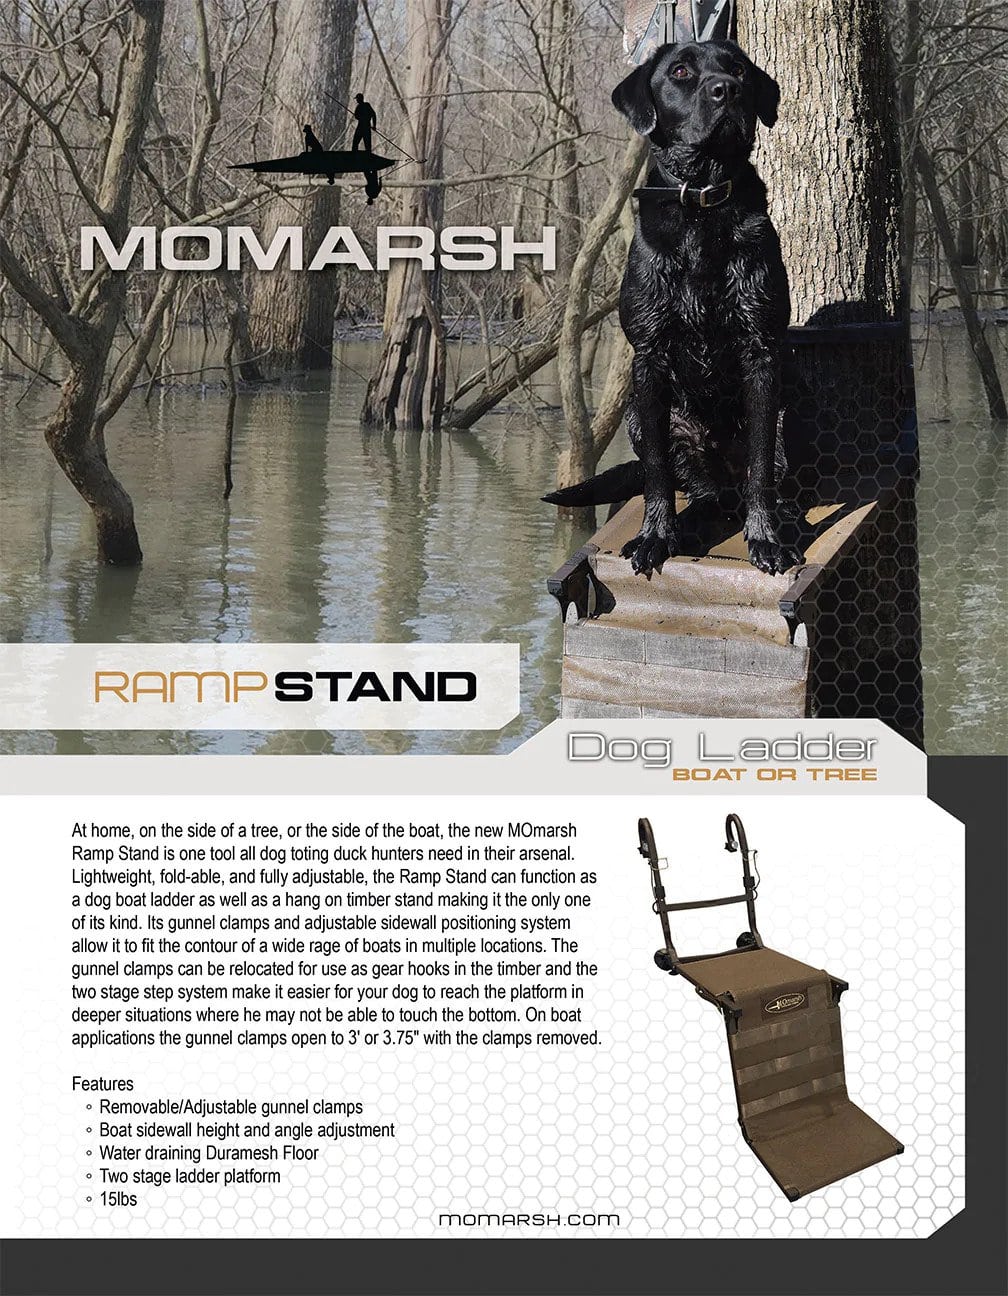 Momarsh Ramp Stand Description